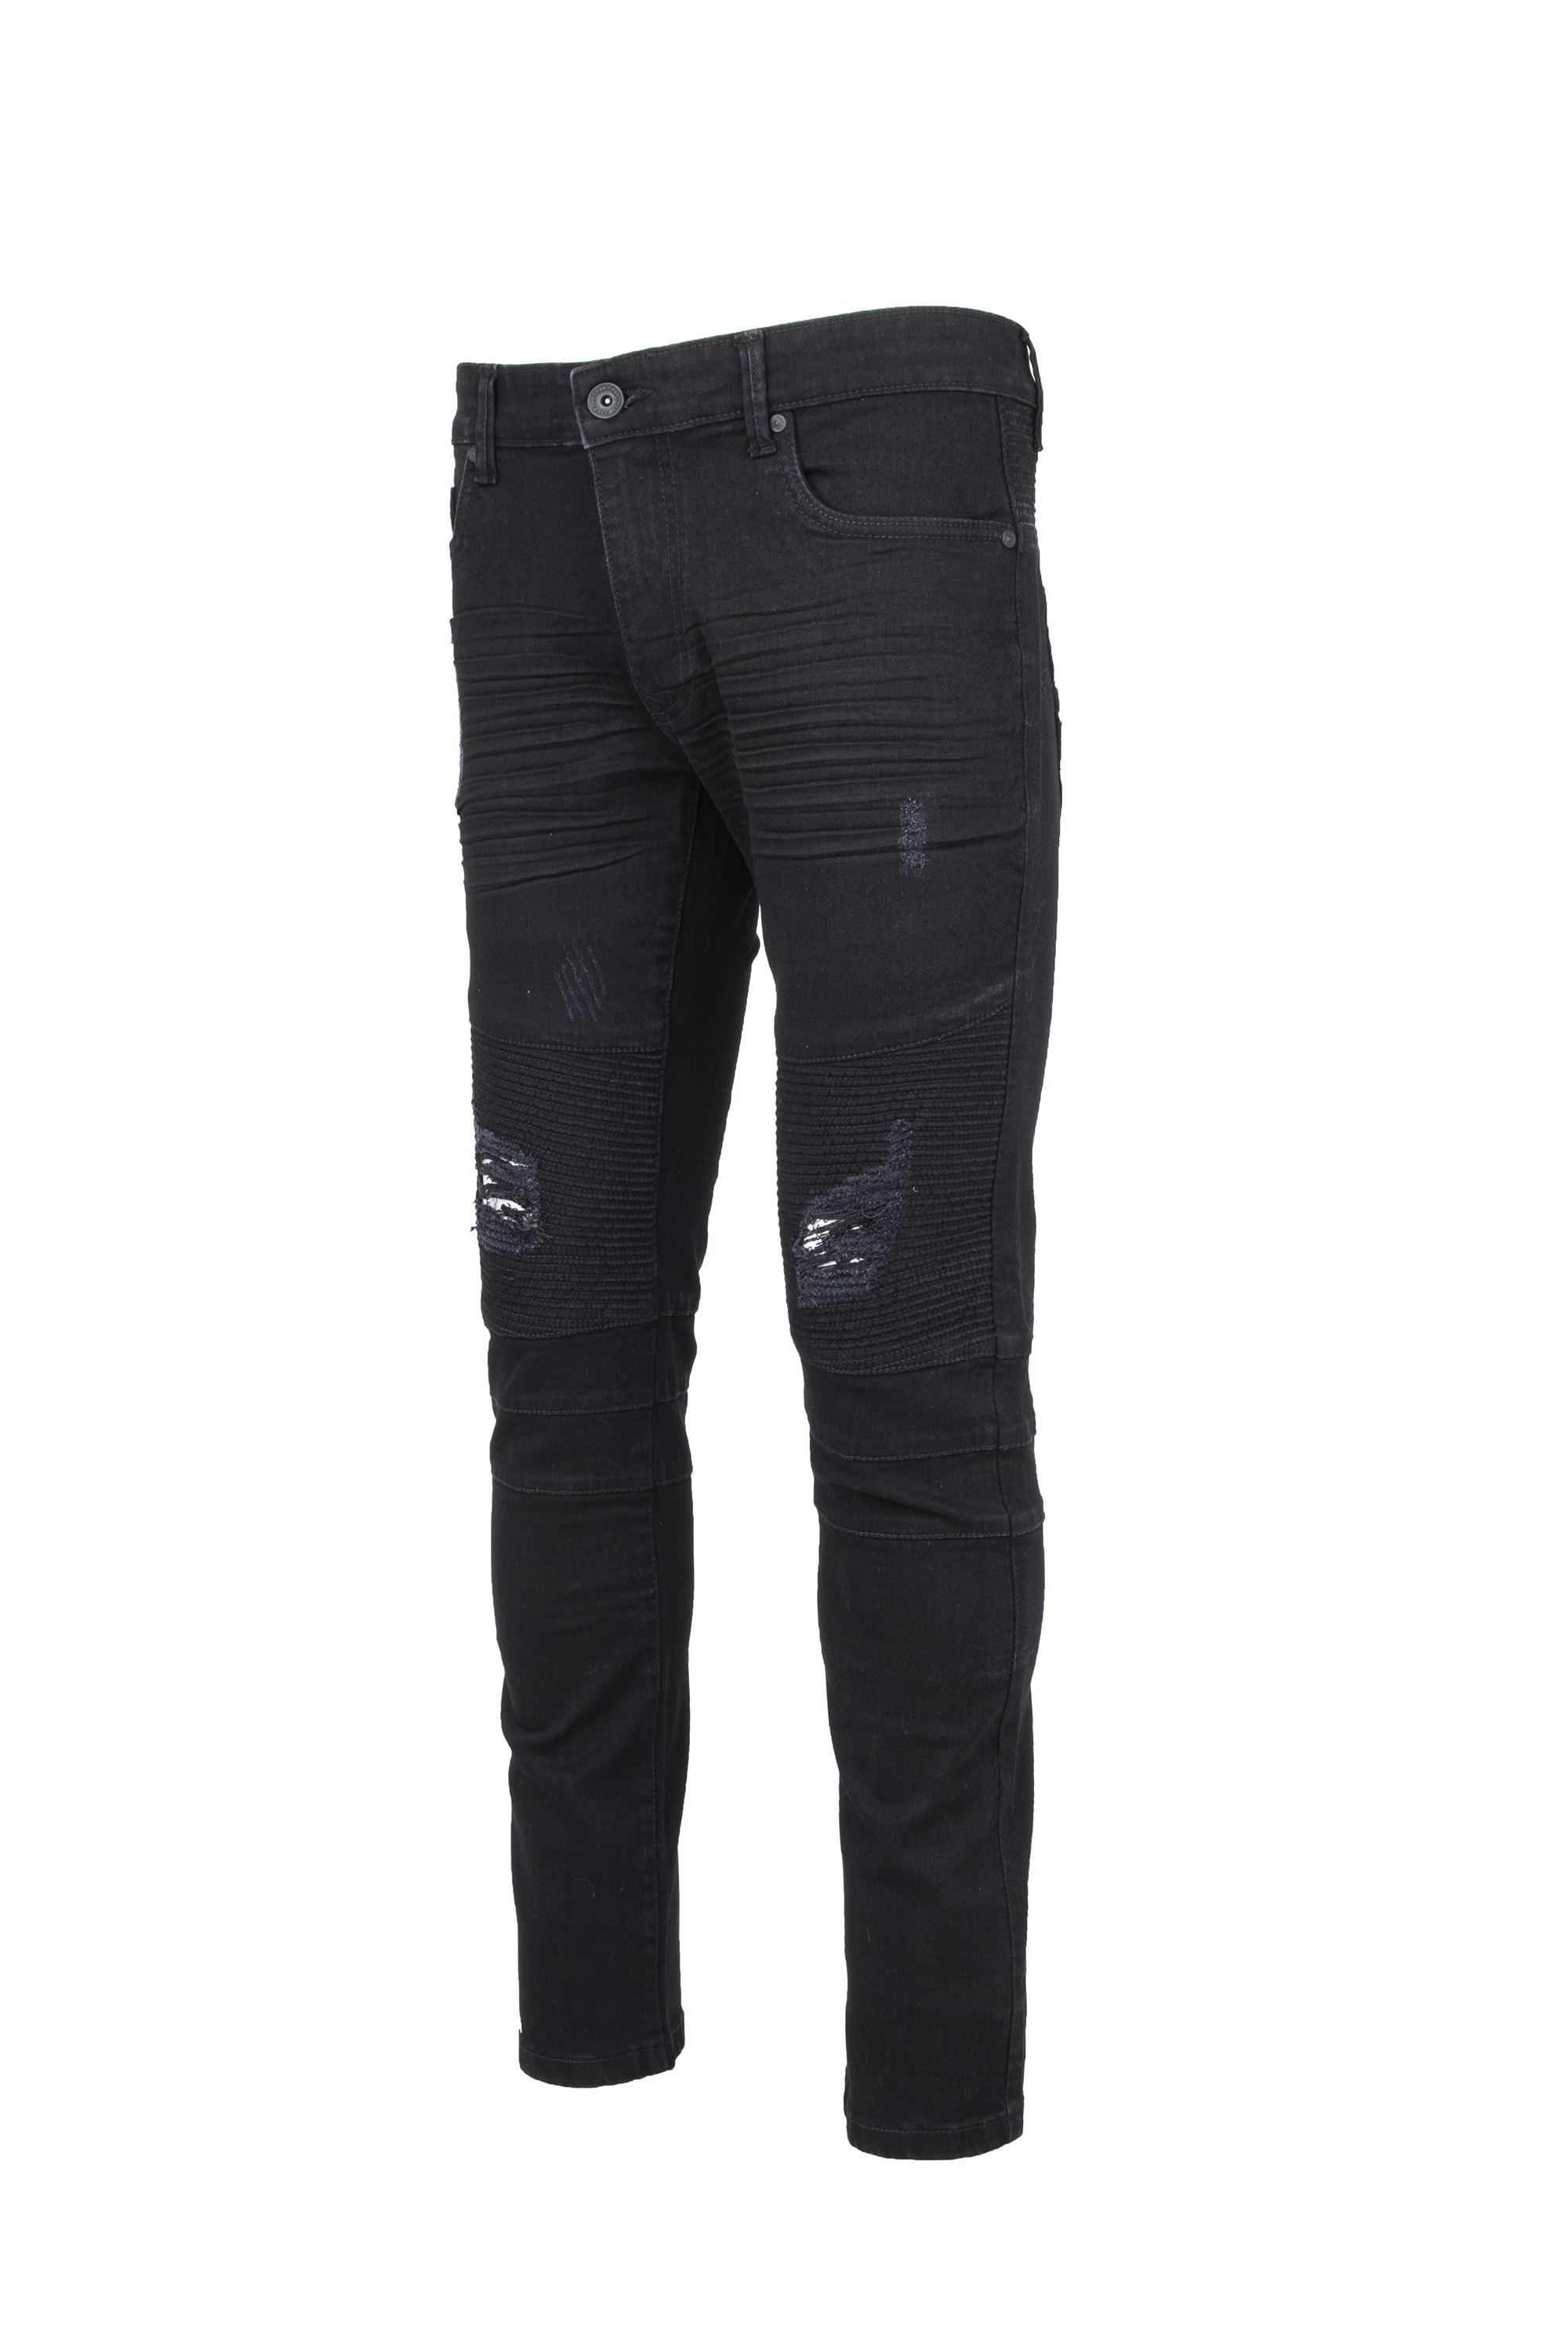 RAW X Men's Slim Fit Skinny Biker Jean, Comfy Flex Stretch Moto Wash Rip Distressed Denim Jeans Pants - image 4 of 8